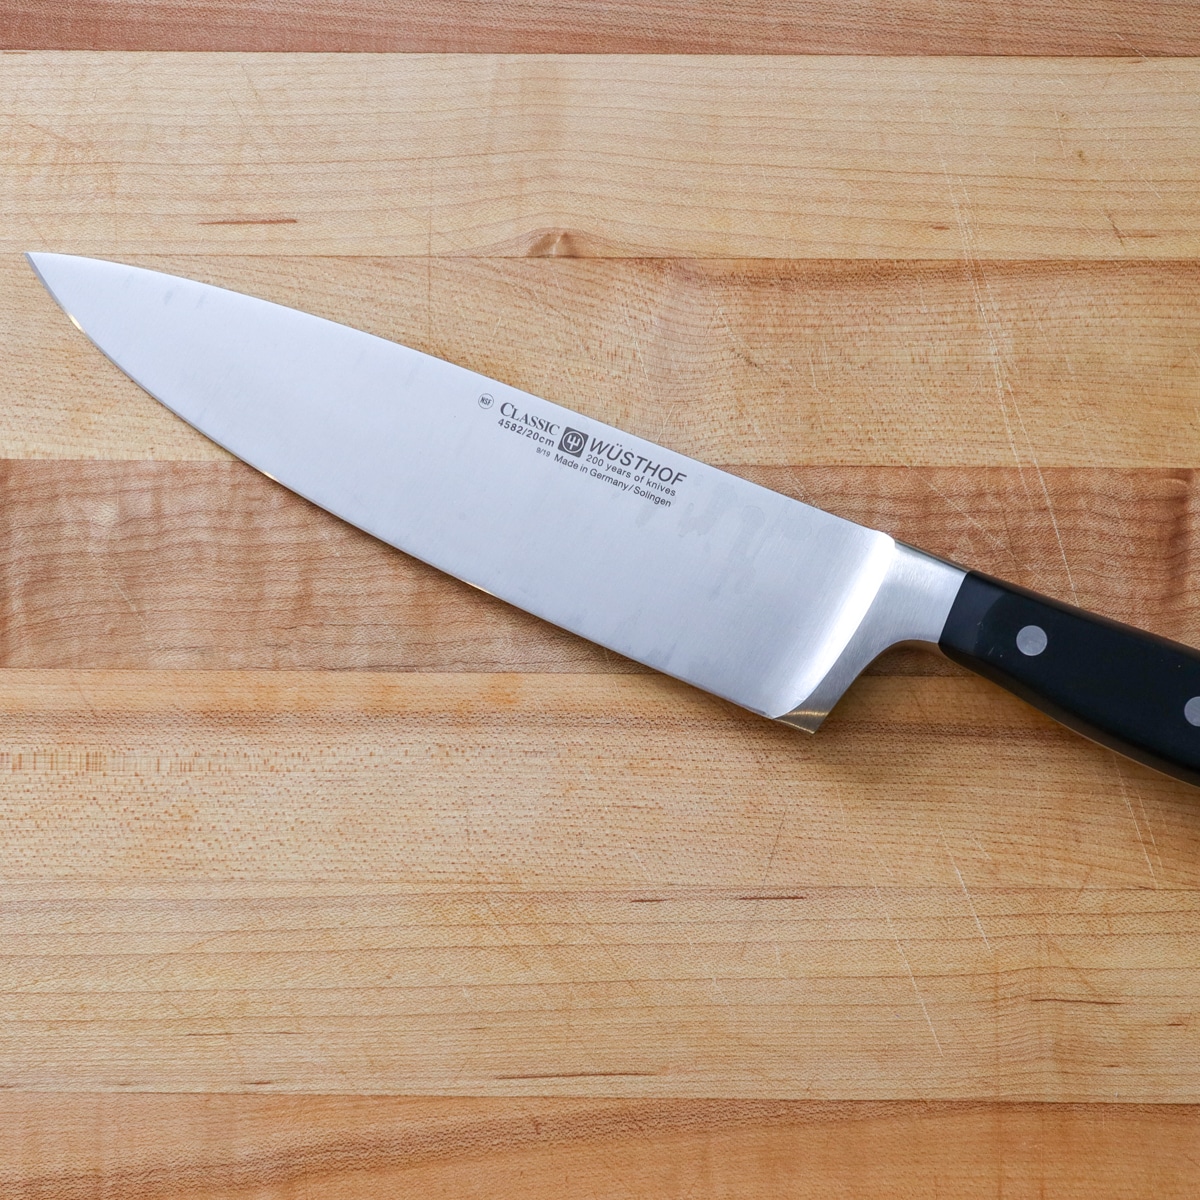 chef knife on a cutting board
